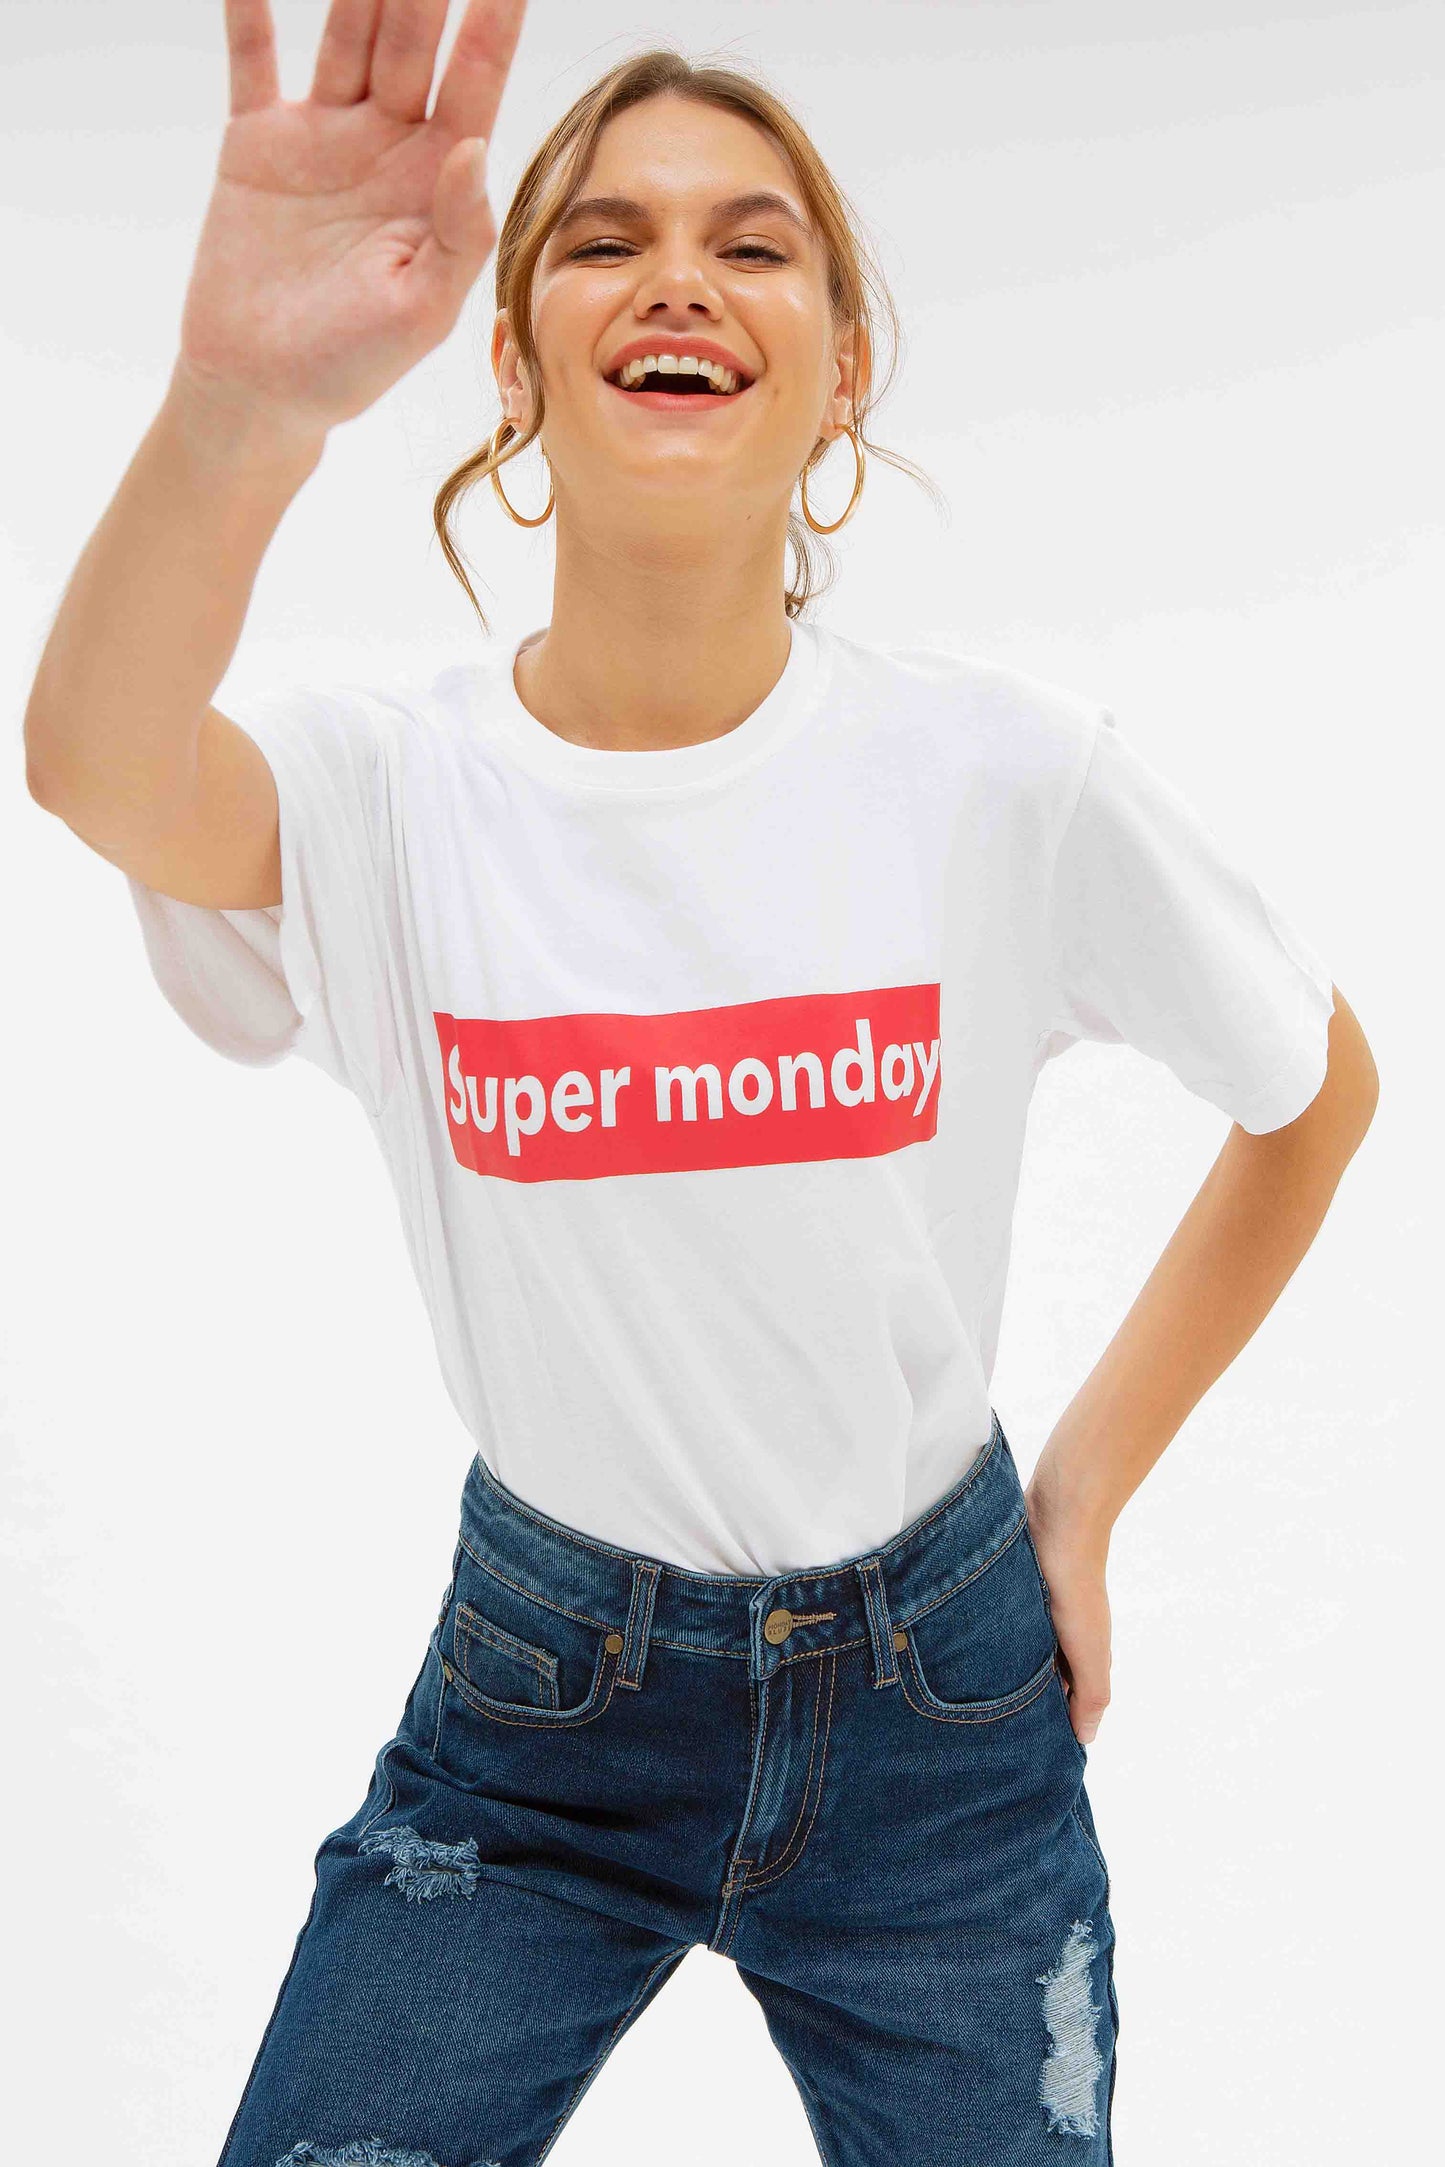 Super Monday T-Shirt Women